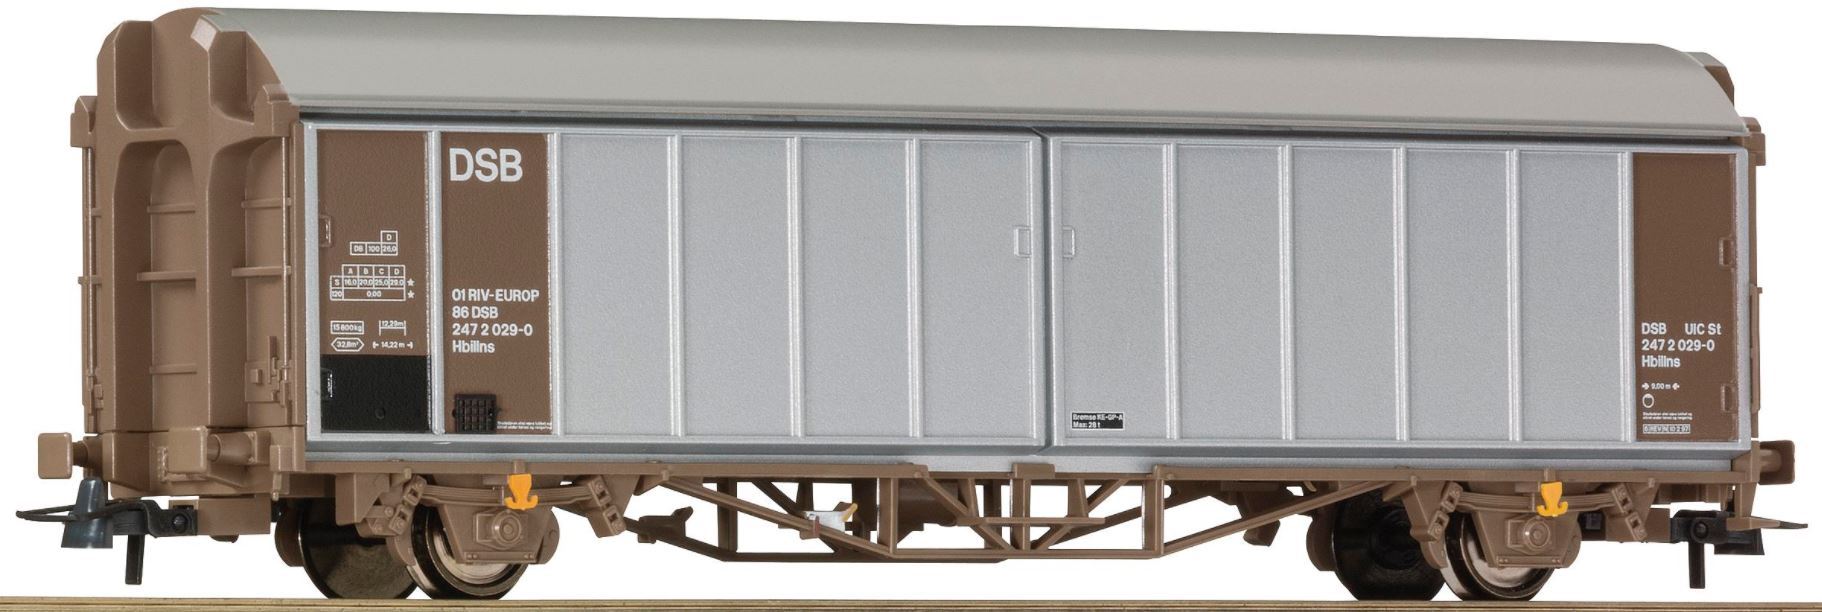 Roco 66864 H0 Sliding Wall Wagon, DSB Ep IV-V